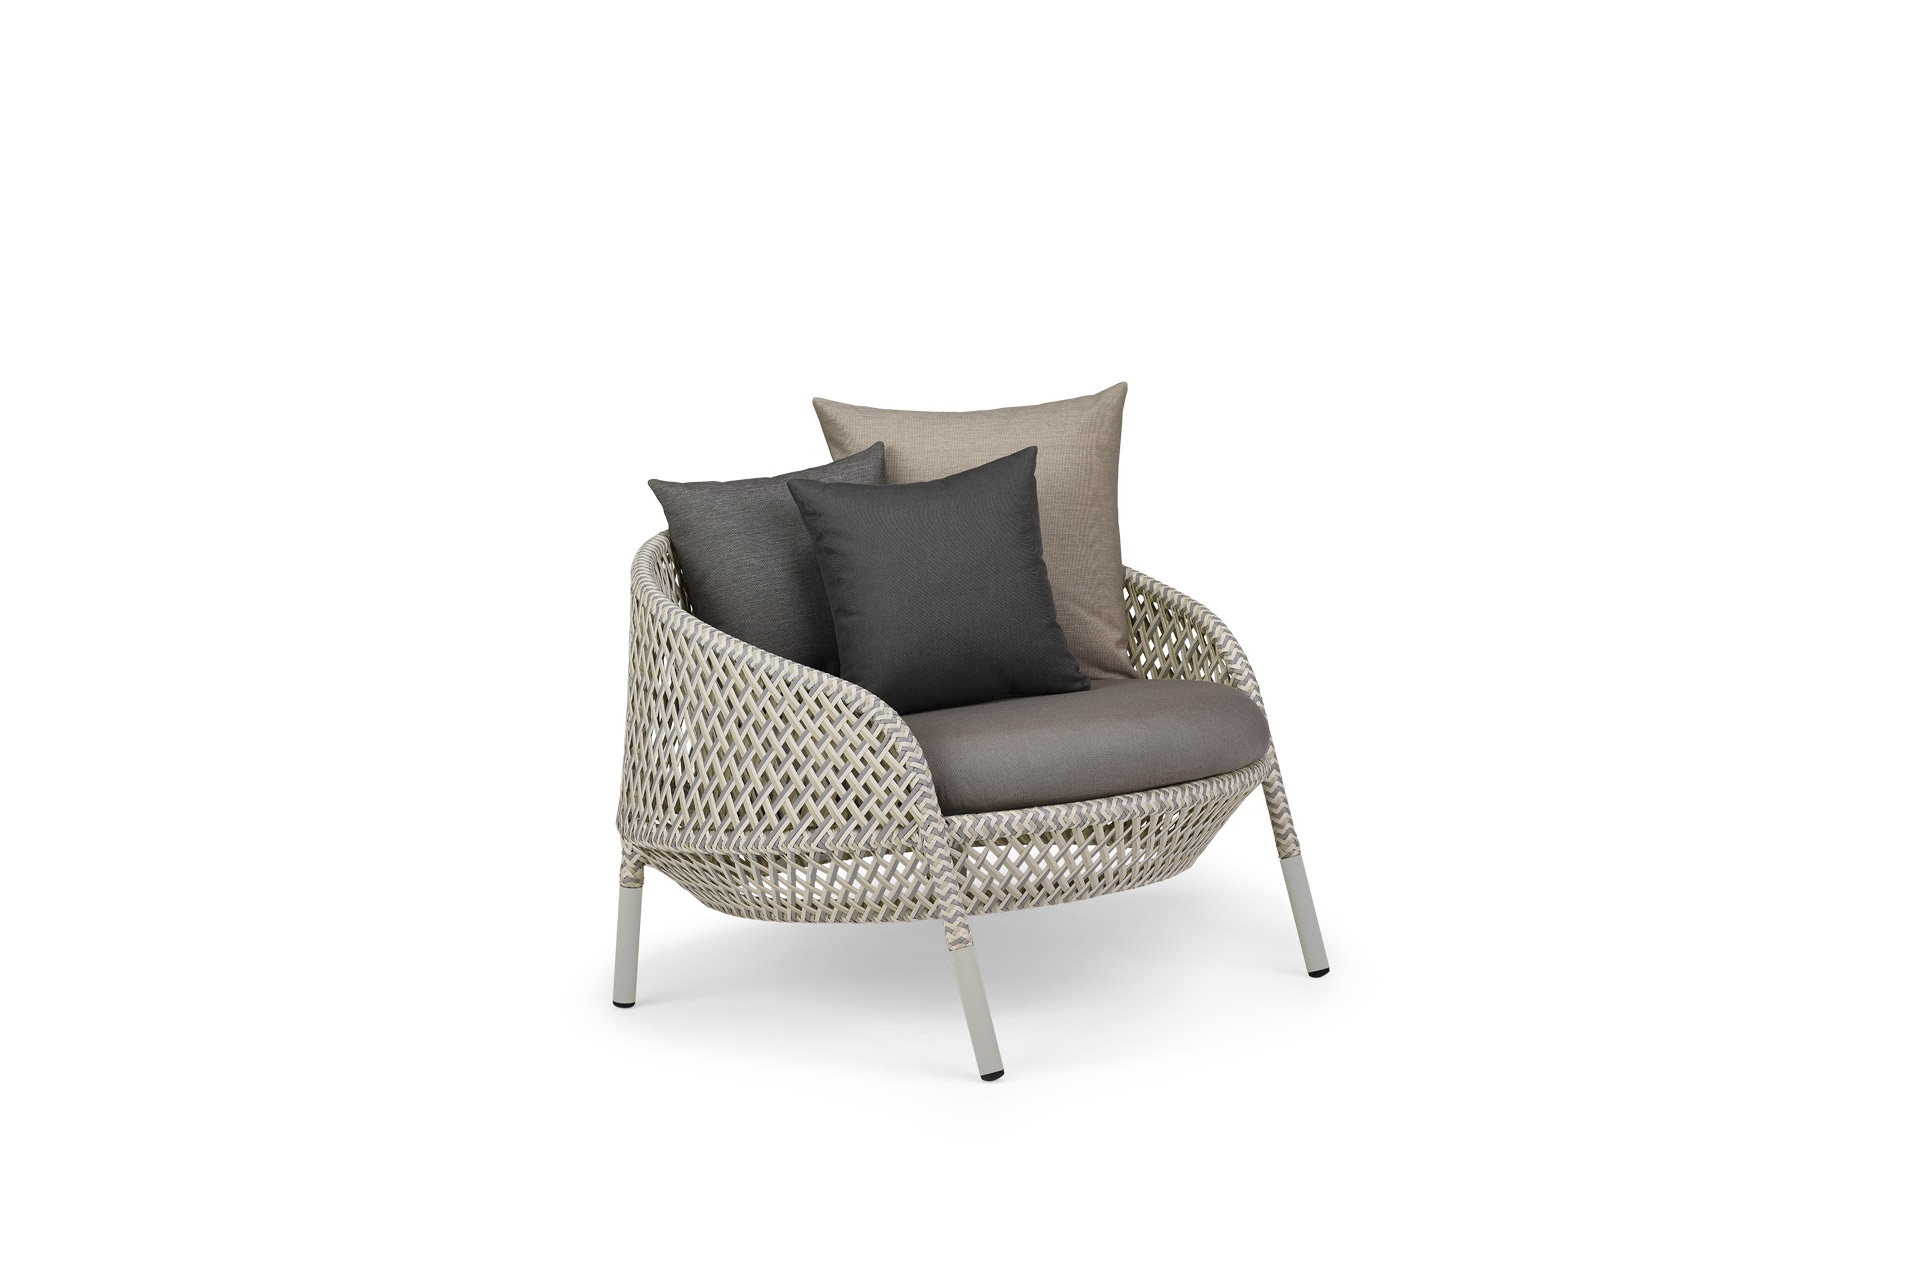 Ahnda Sessel - Lounge Chair, inkl. Polster